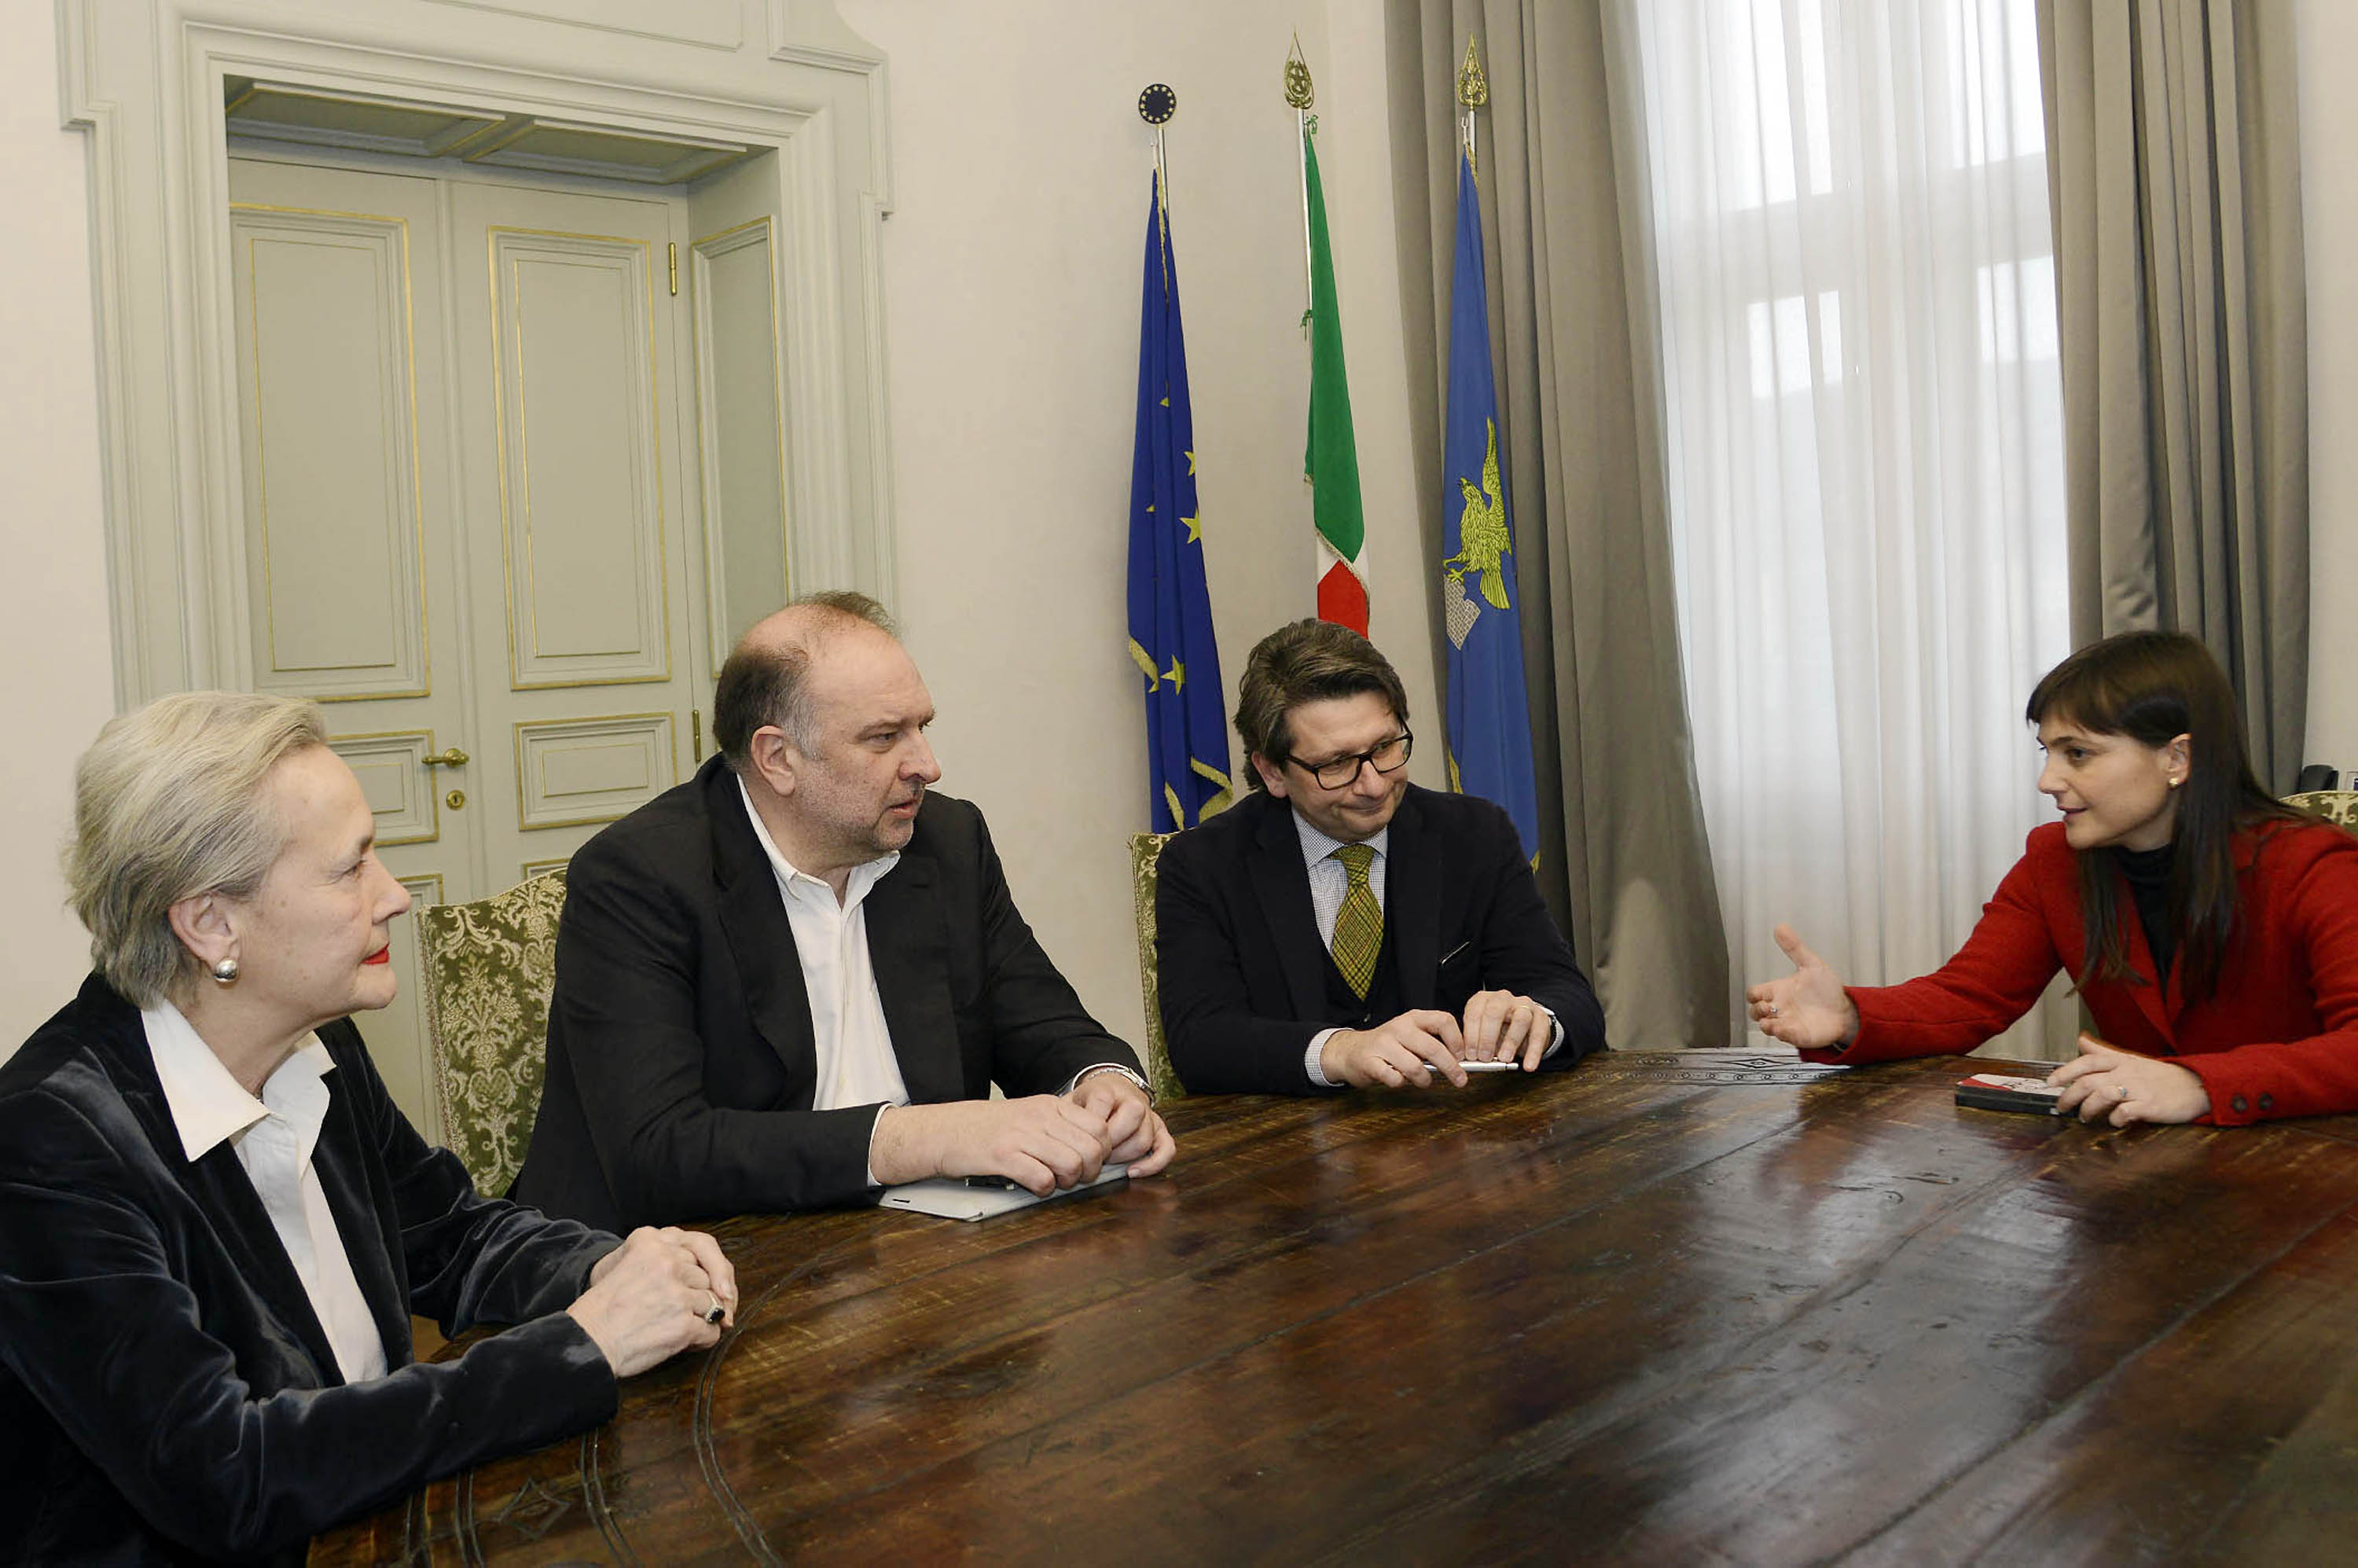 Zeno d'Agostino con i gerarchi del PD: Teresa Bassa Portopat, Roberto Cosolini e Debora Serracchiani.